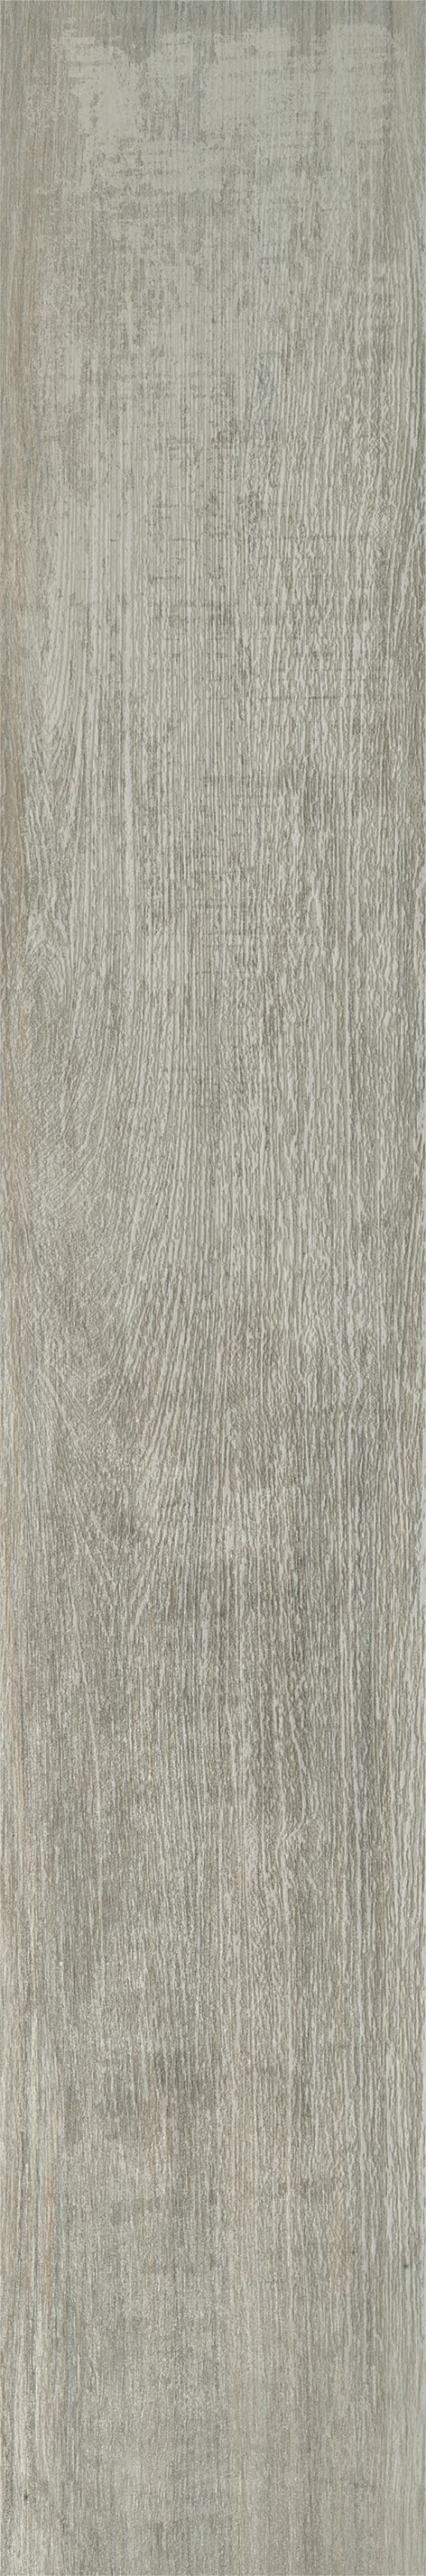 Плитка из керамогранита матовая Italon Грув 20x120 серый (610010001883) плитка из керамогранита матовая italon грув 9 5x60 серый 610010001887